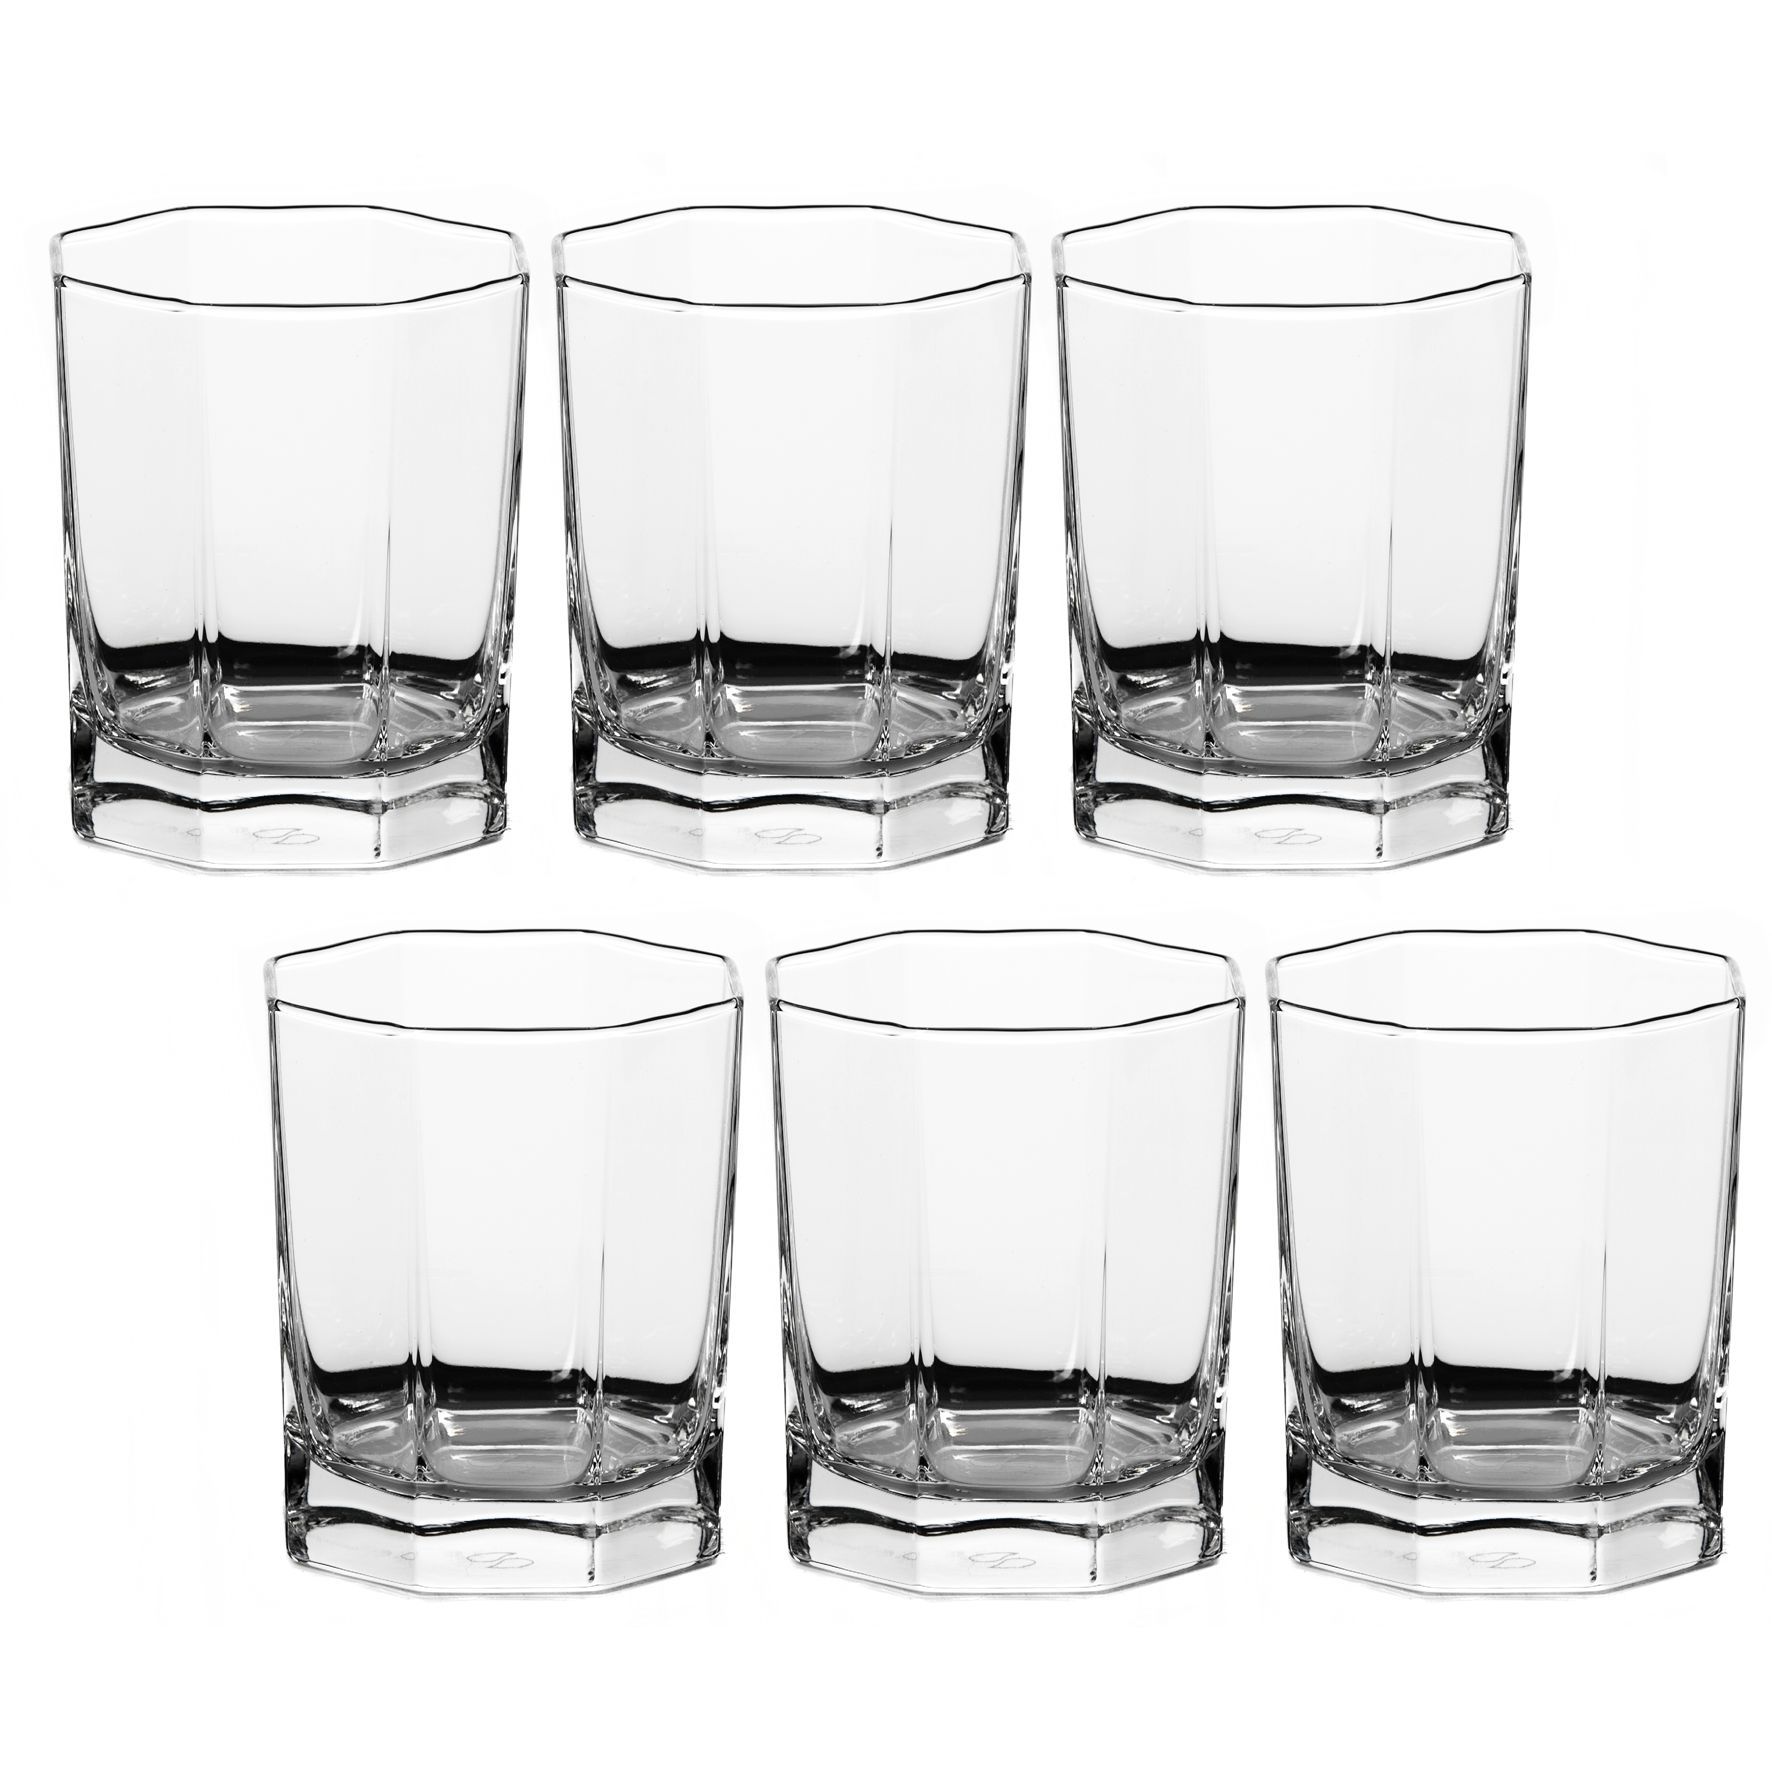 А столе в ряд стоят 6 стаканов первые три пустые а последние три наполнены